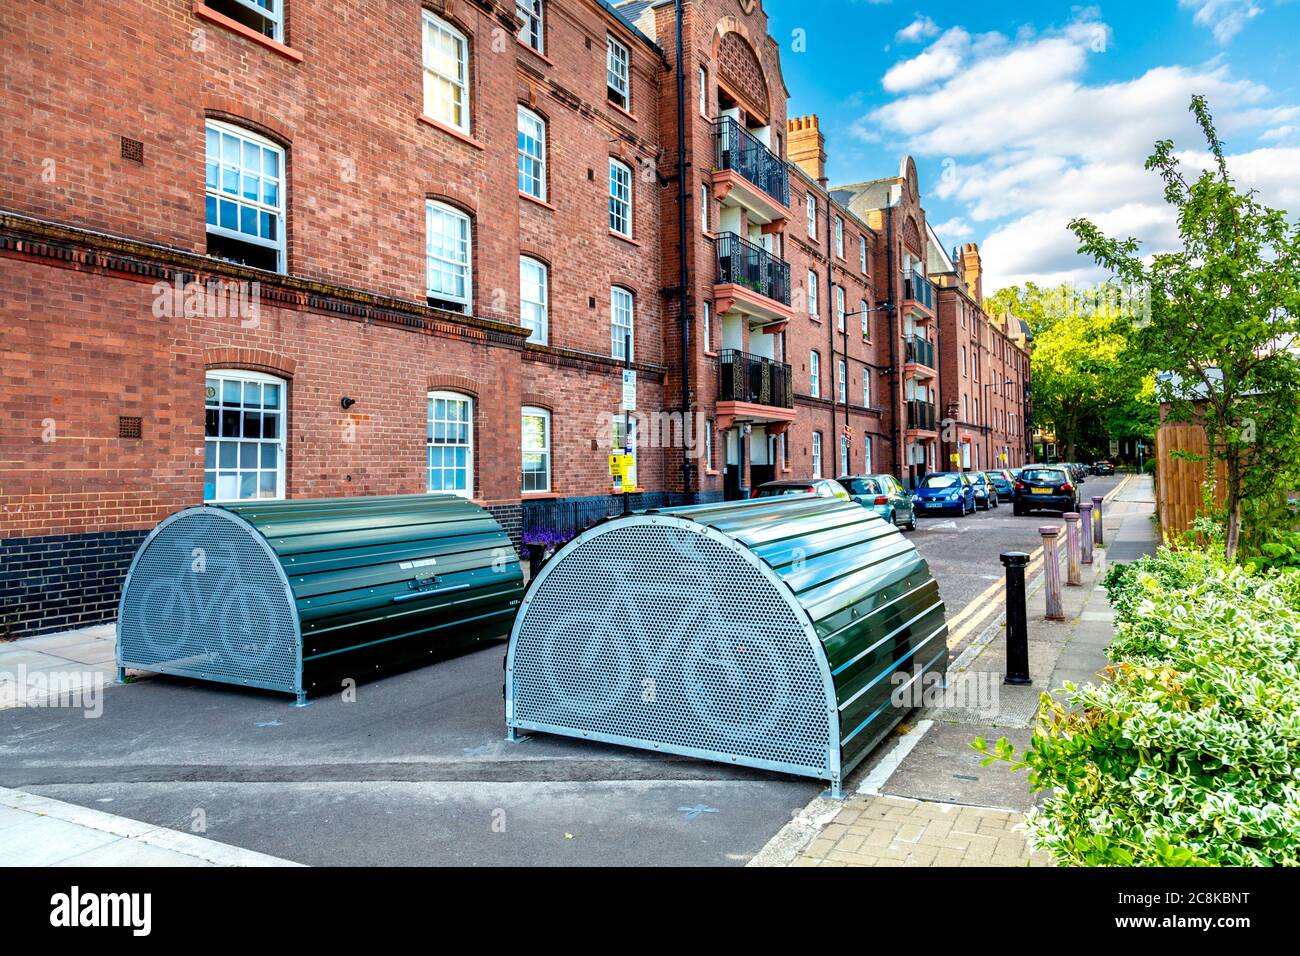 Cyclehoop Bikehangar - abri à vélo sur le côté de la route, occupe une place de parking, Londres, Royaume-Uni Banque D'Images